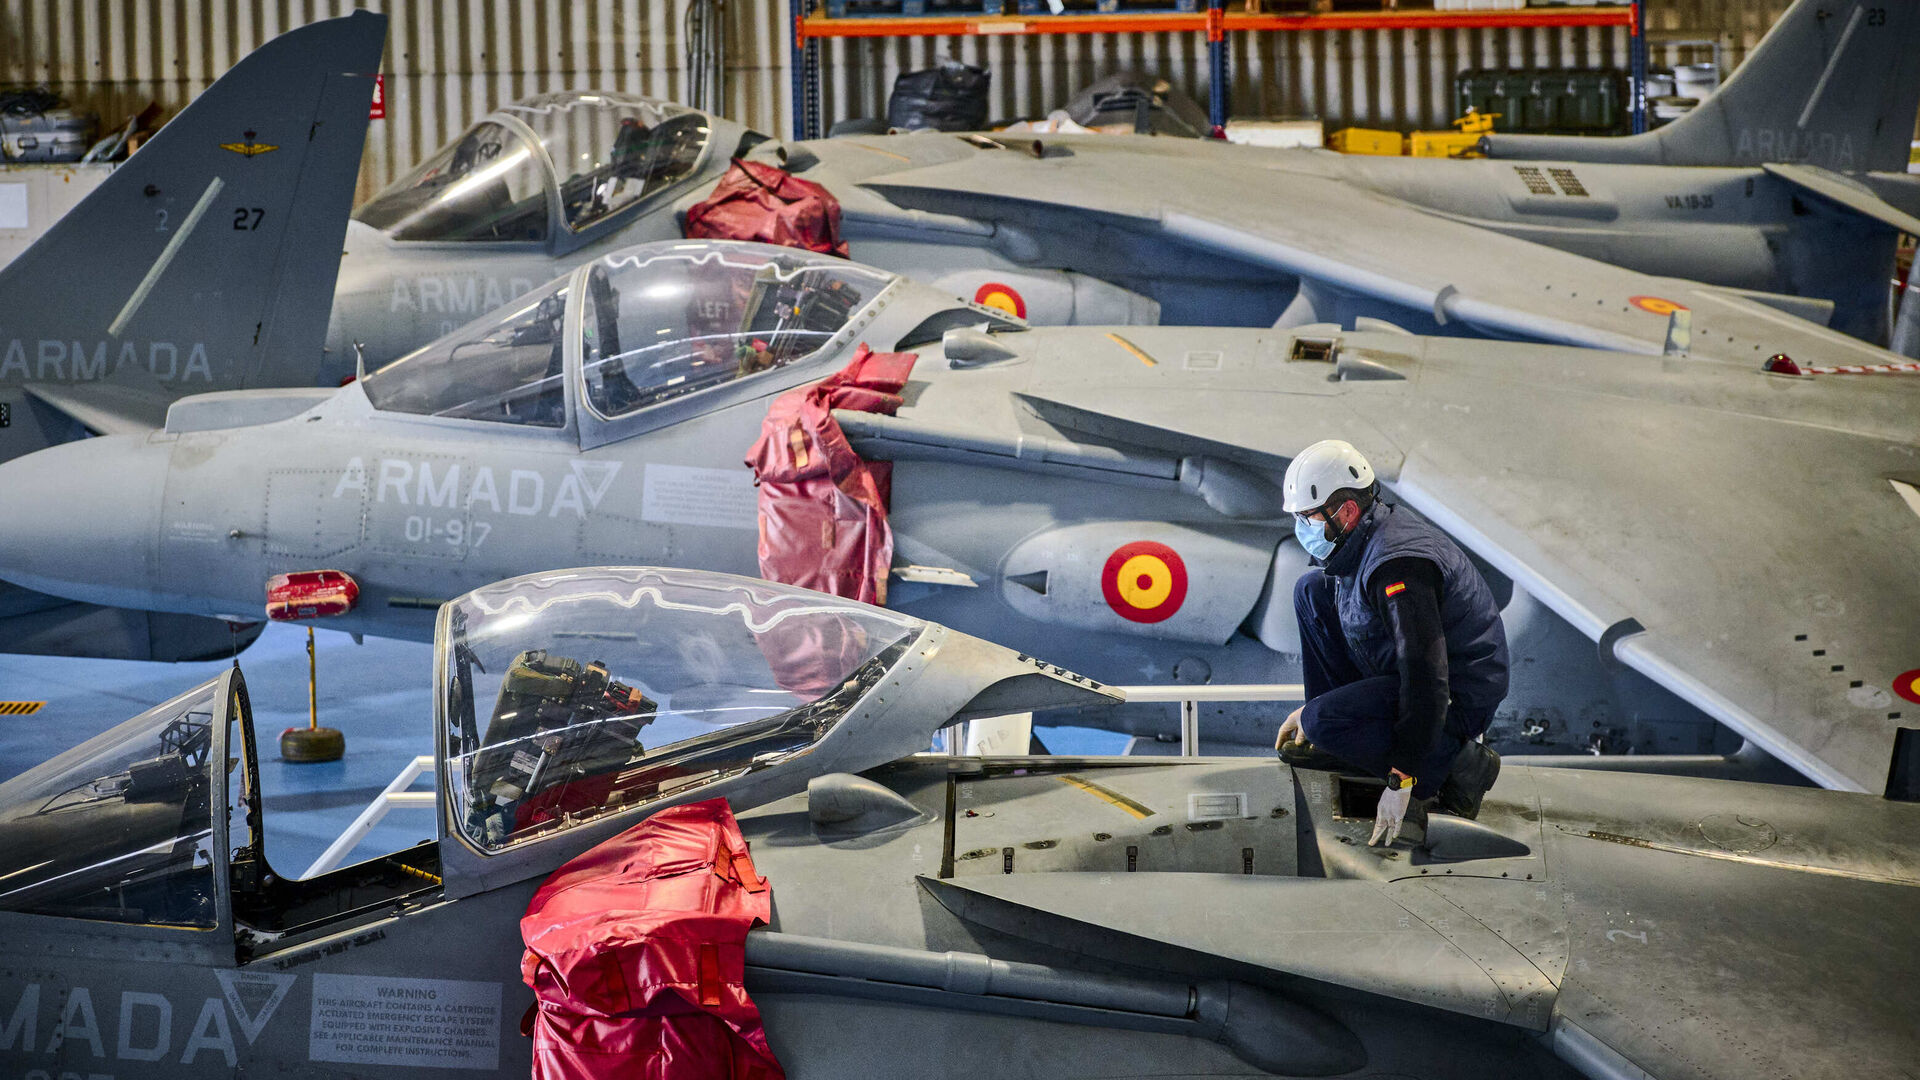 T&eacute;cnicos de mantenimiento de la Armada en plena faena de reparaci&oacute;n o revisi&oacute;n de los Harriers.